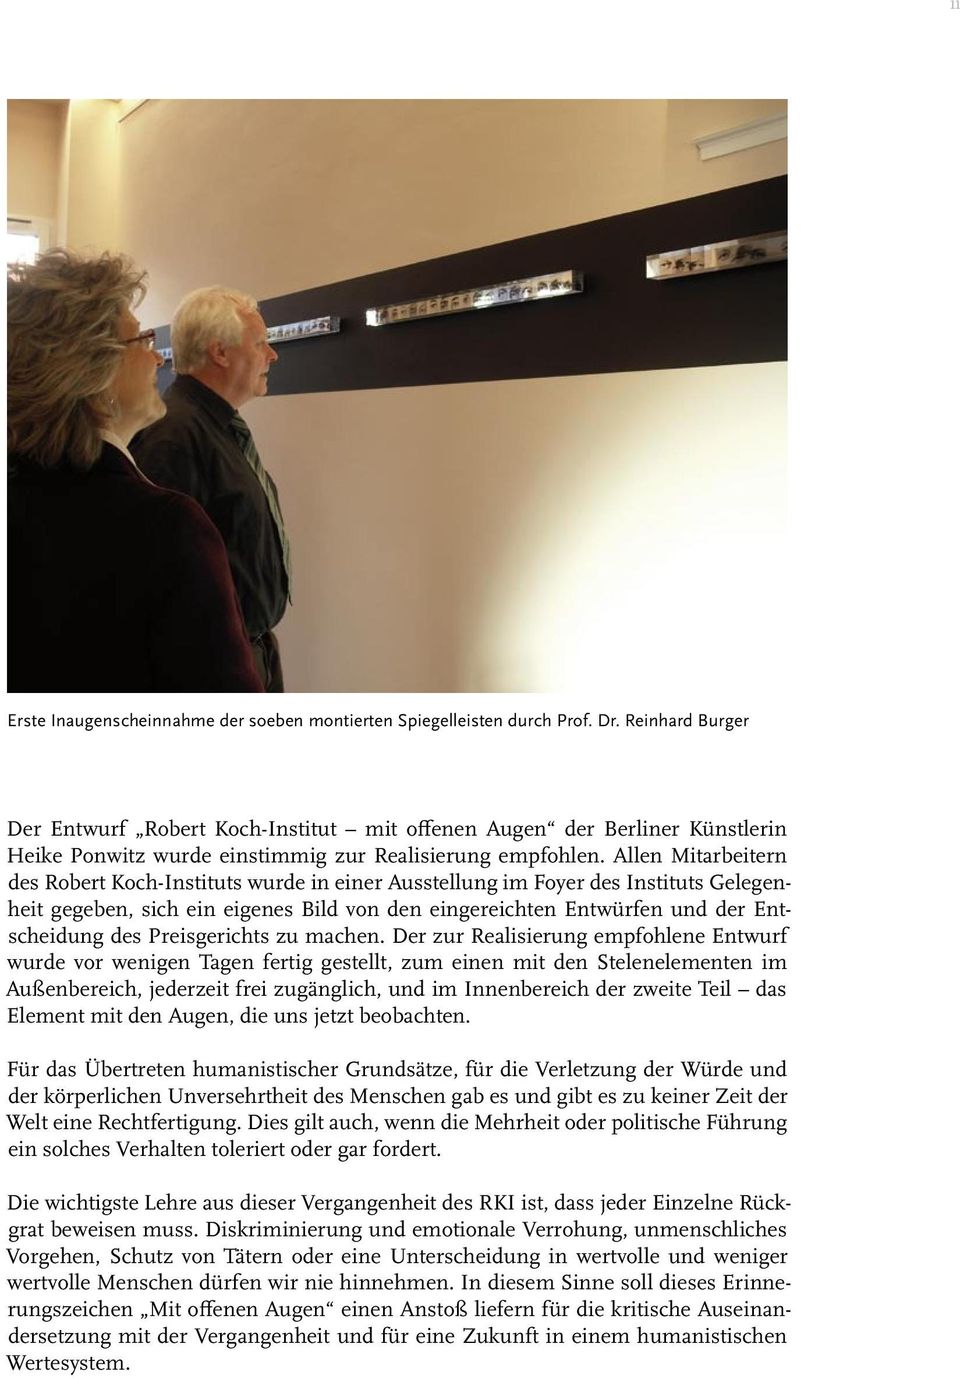 Allen Mitarbeitern des Robert Koch-Instituts wurde in einer Ausstellung im Foyer des Instituts Gelegenheit gegeben, sich ein eigenes Bild von den eingereichten Entwürfen und der Entscheidung des